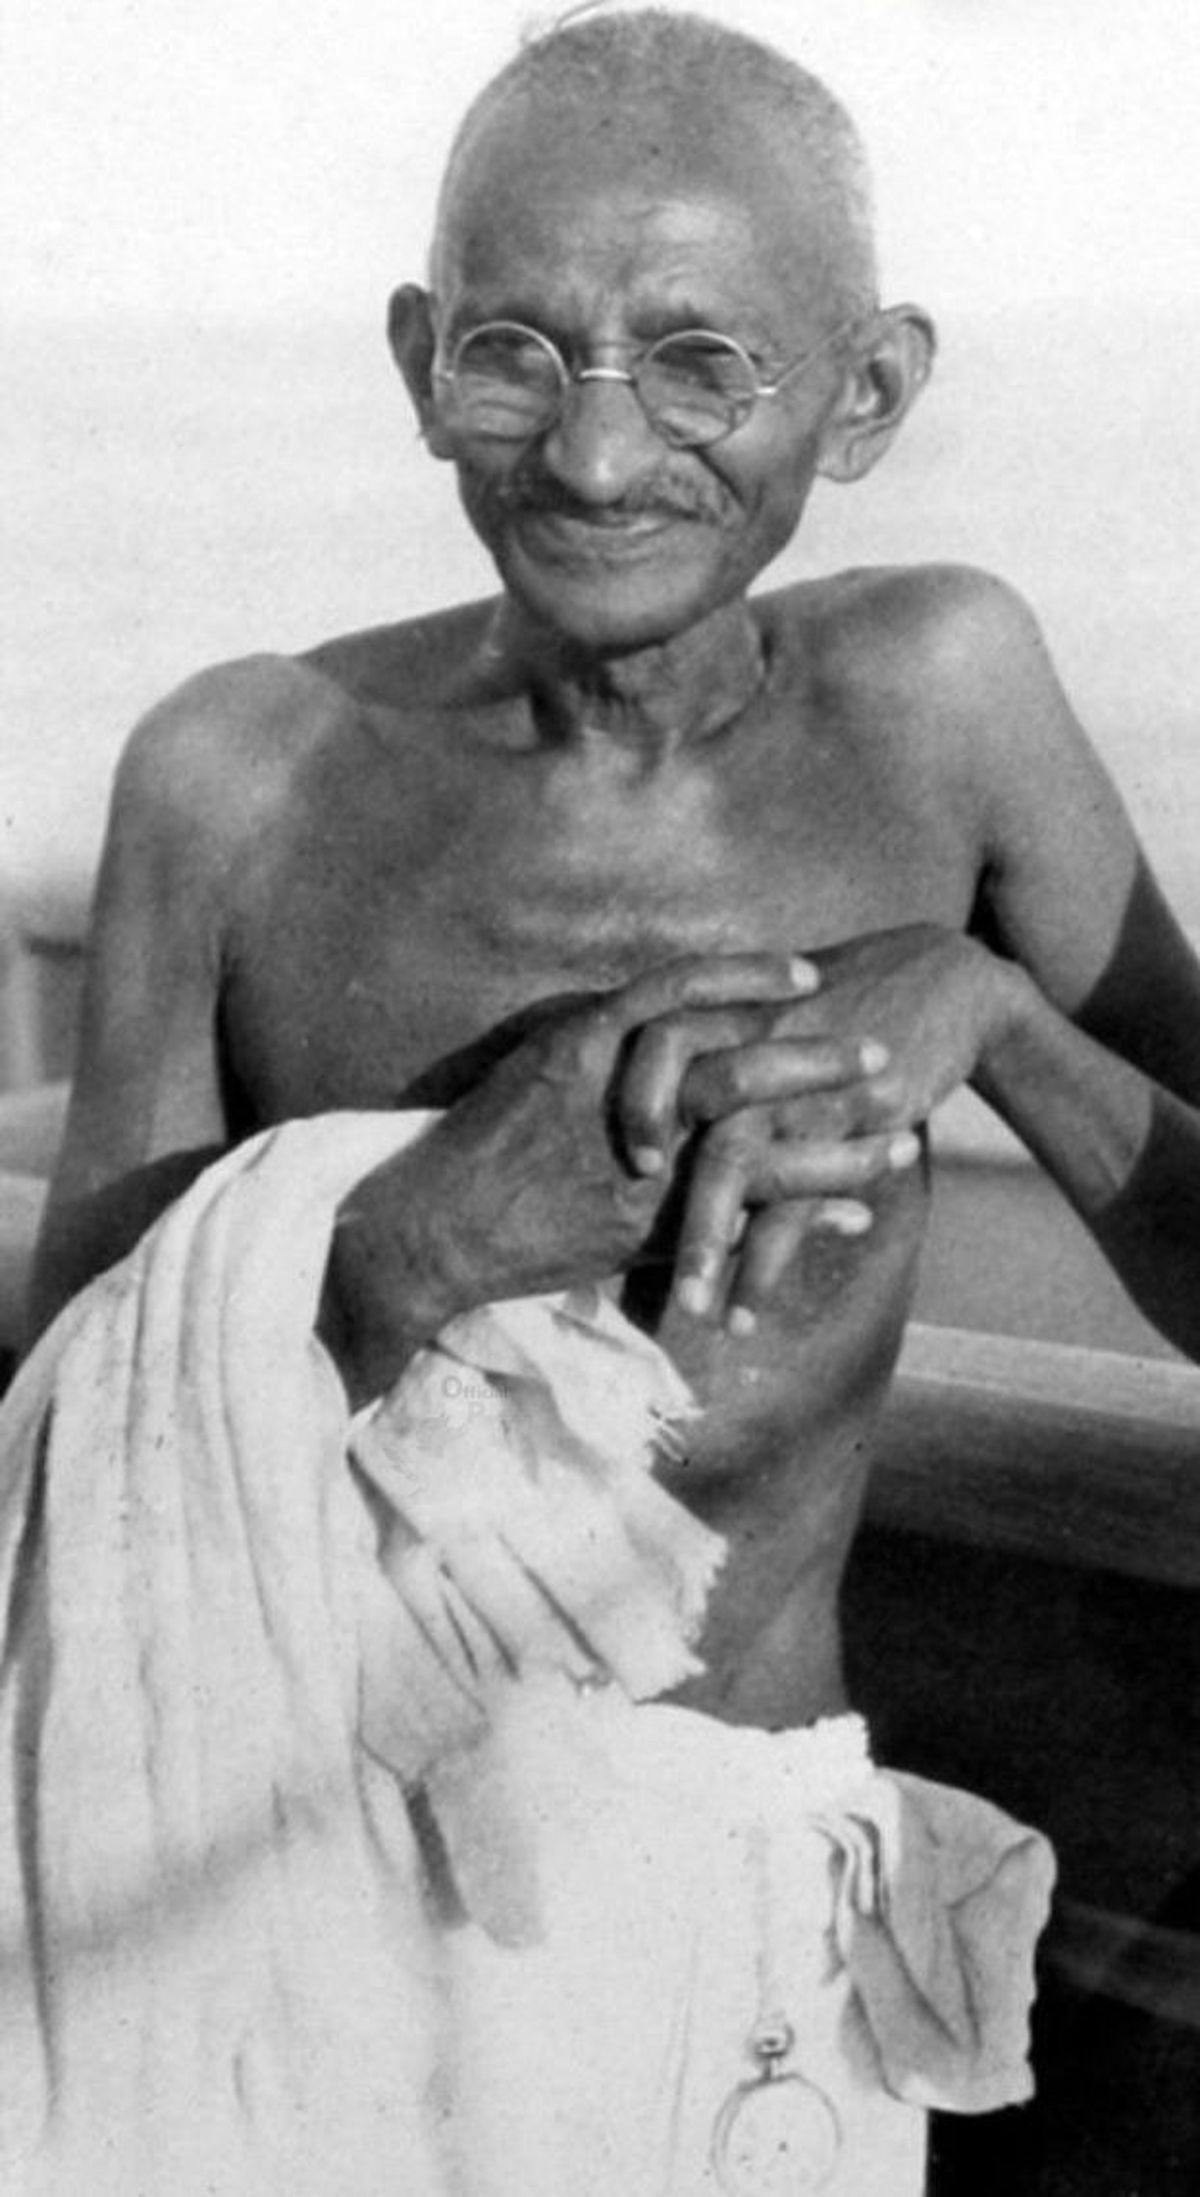 الگو برداری لباس عید از ماهاتما گاندی